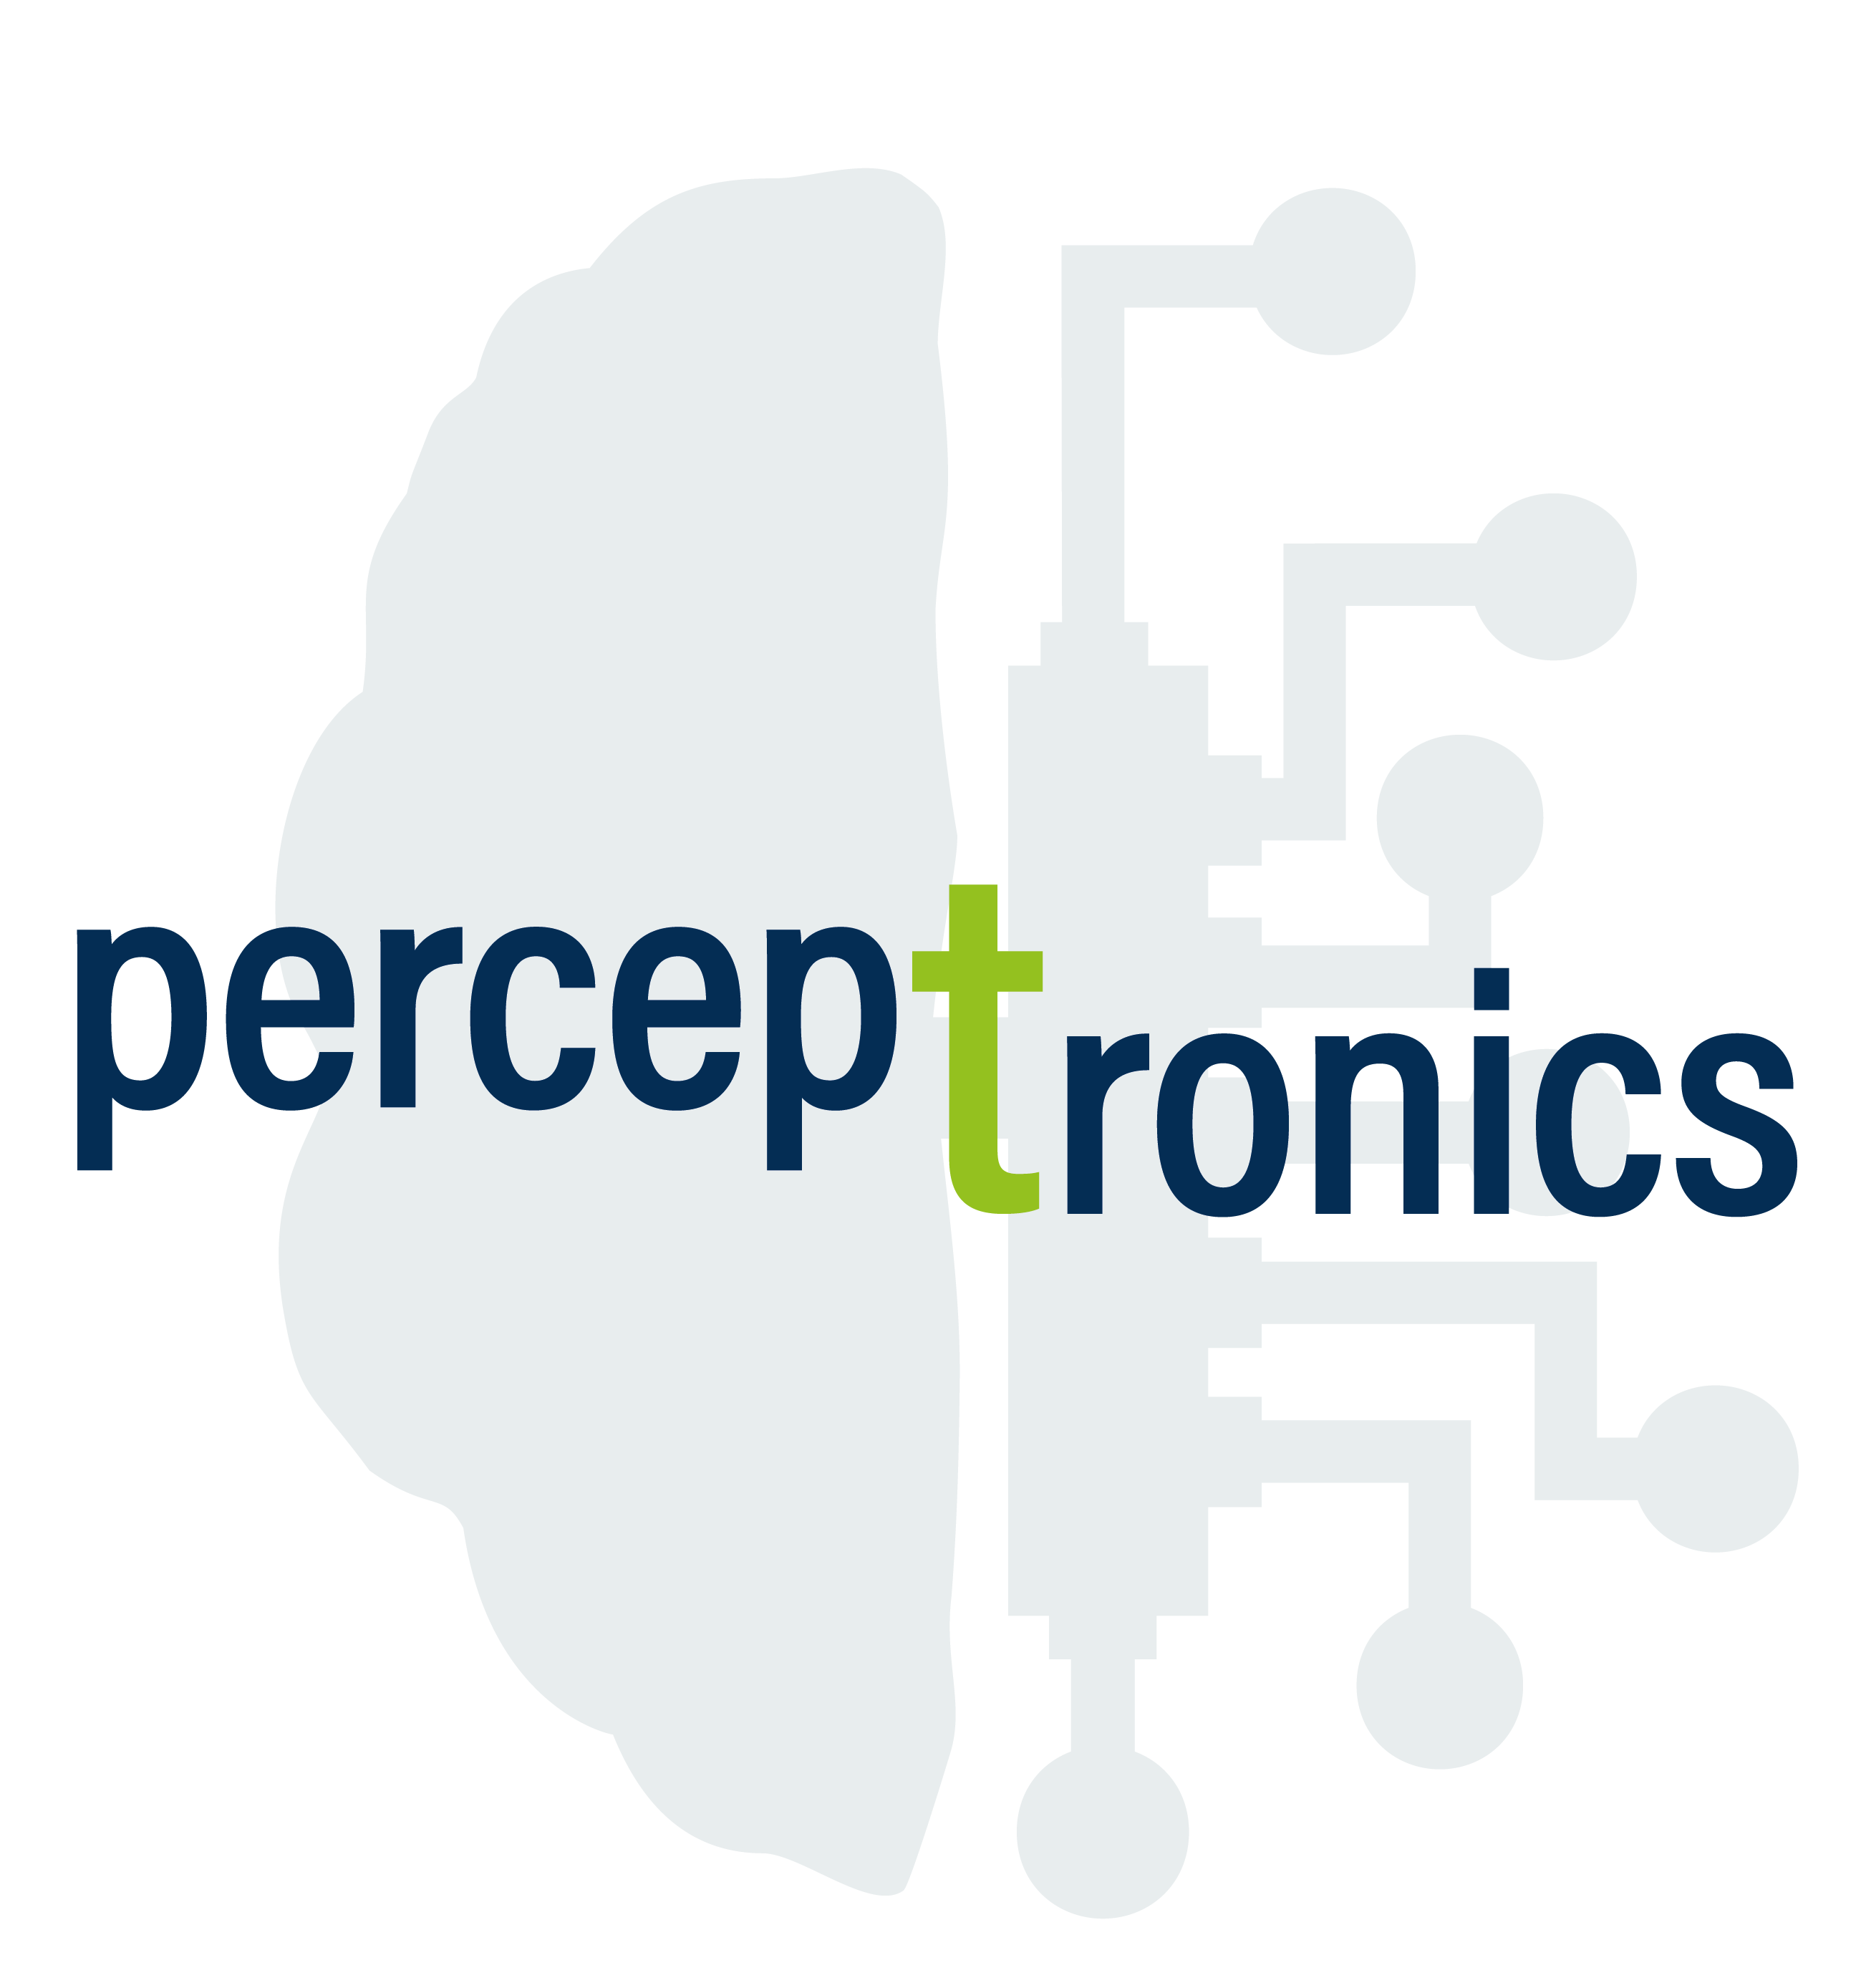 perceptronics